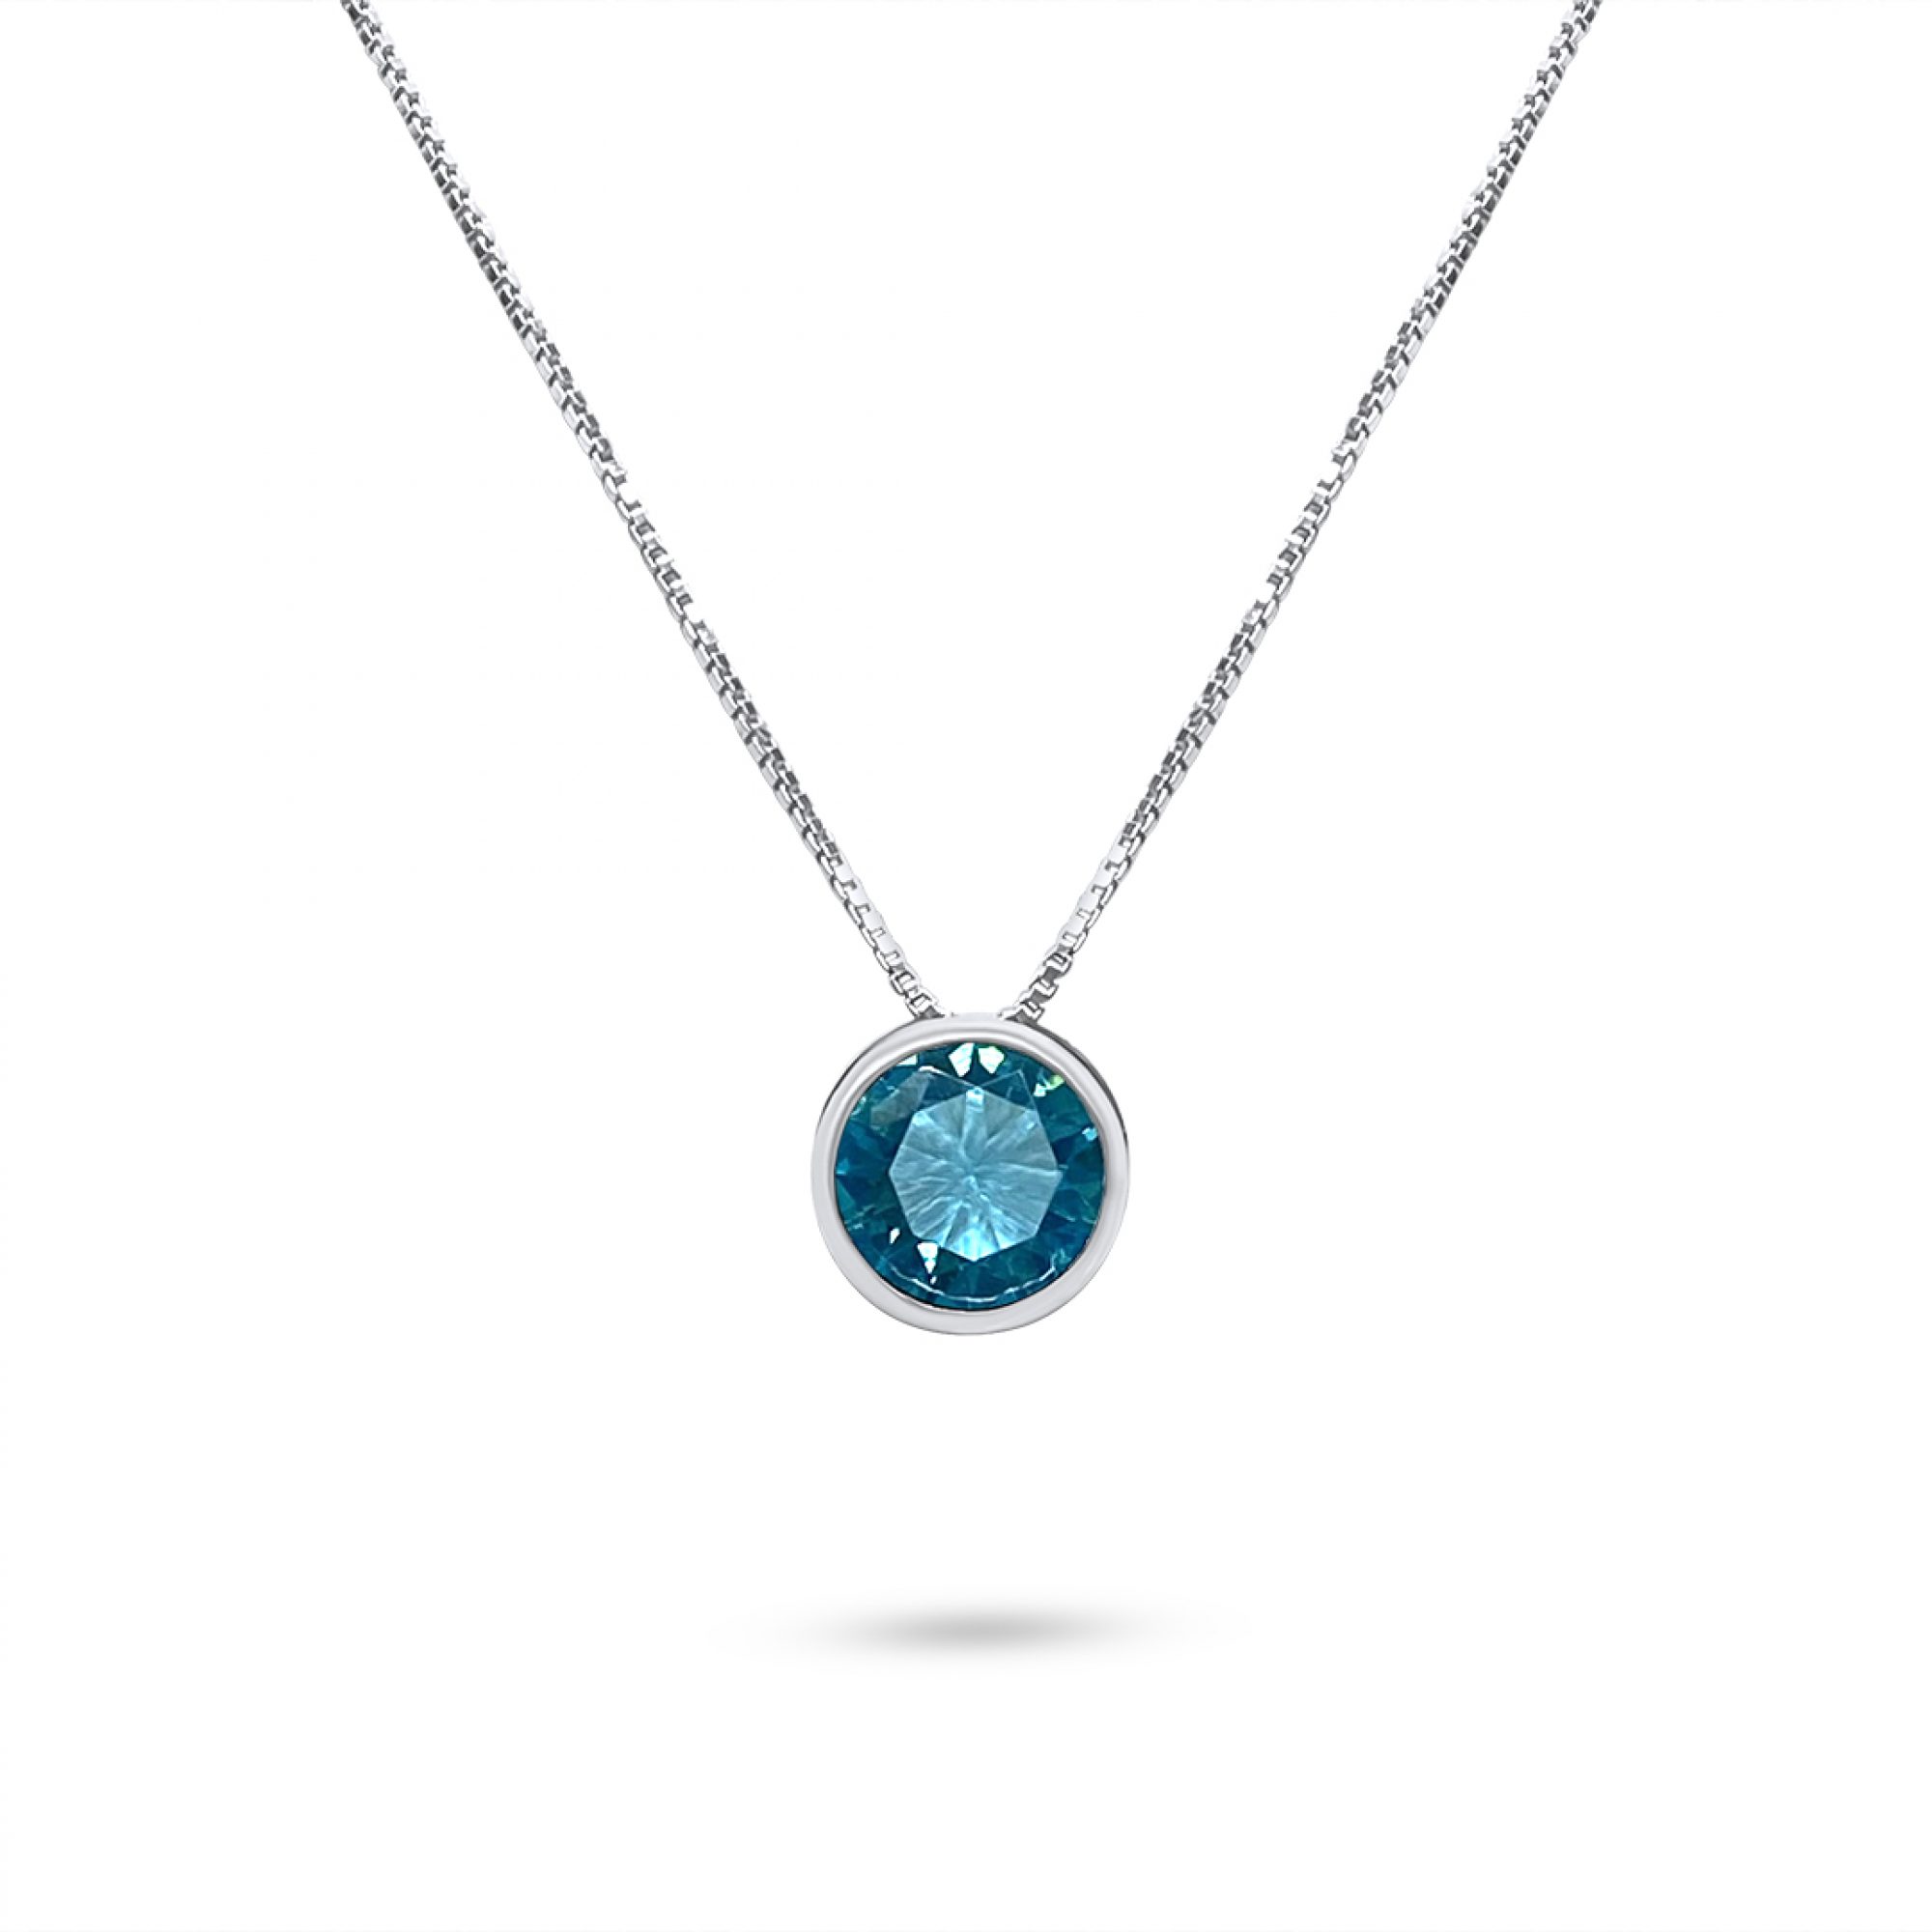 Necklace with aquamarine stone